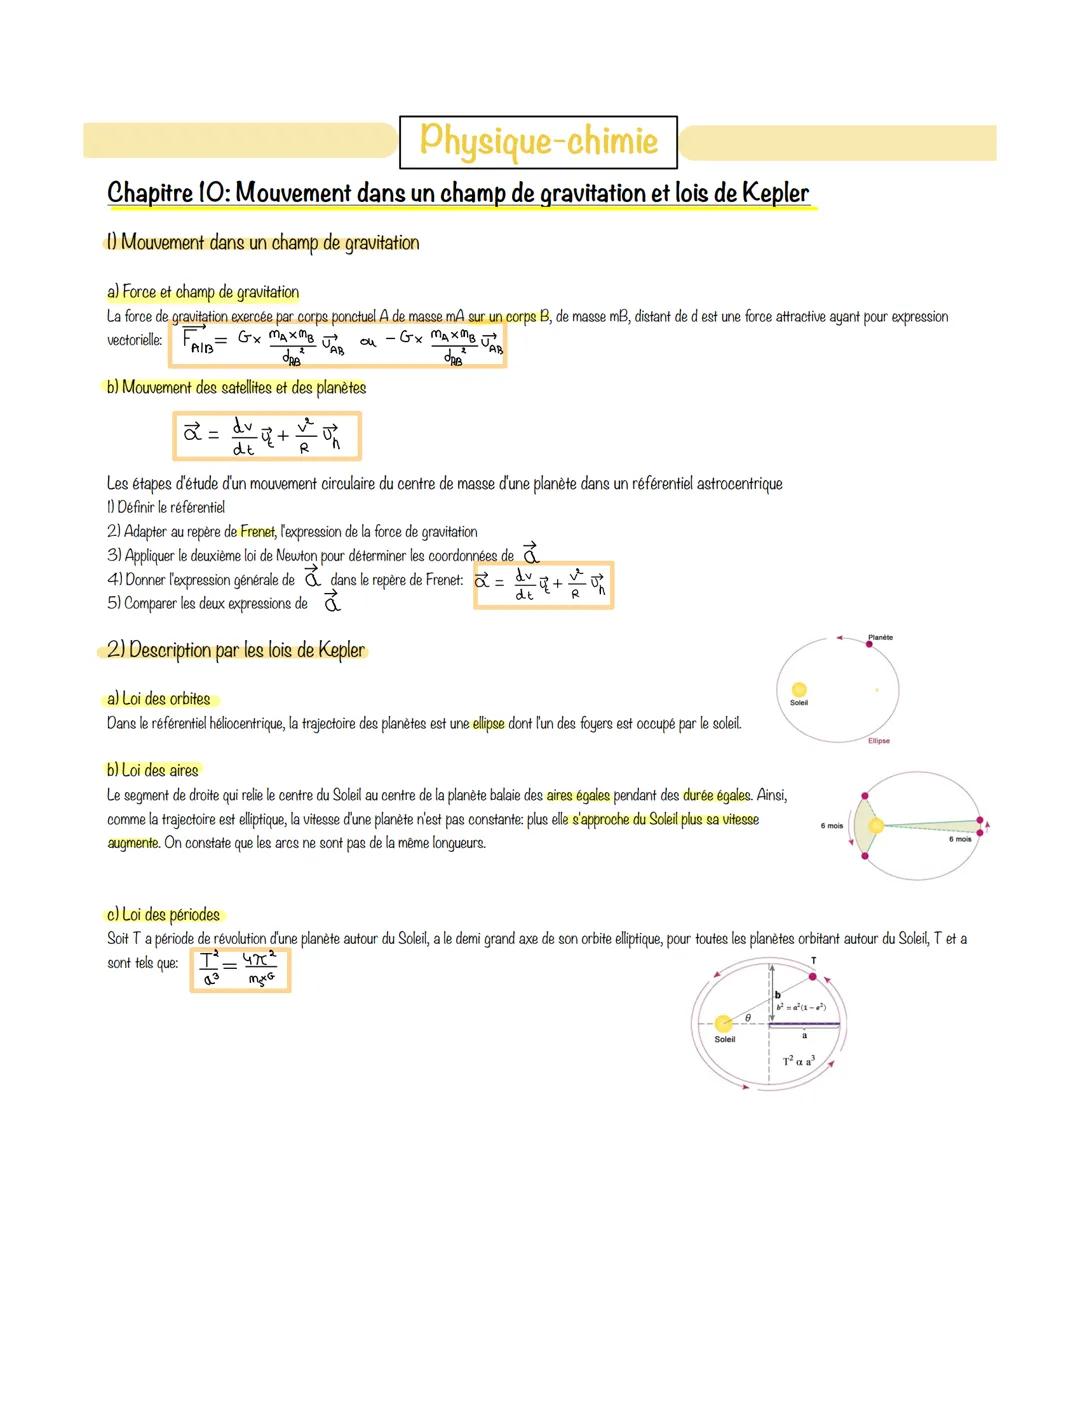 Physique-chimie
Chapitre 10: Mouvement dans un champ de gravitation et lois de Kepler
1) Mouvement dans un champ de gravitation
a) Force et 